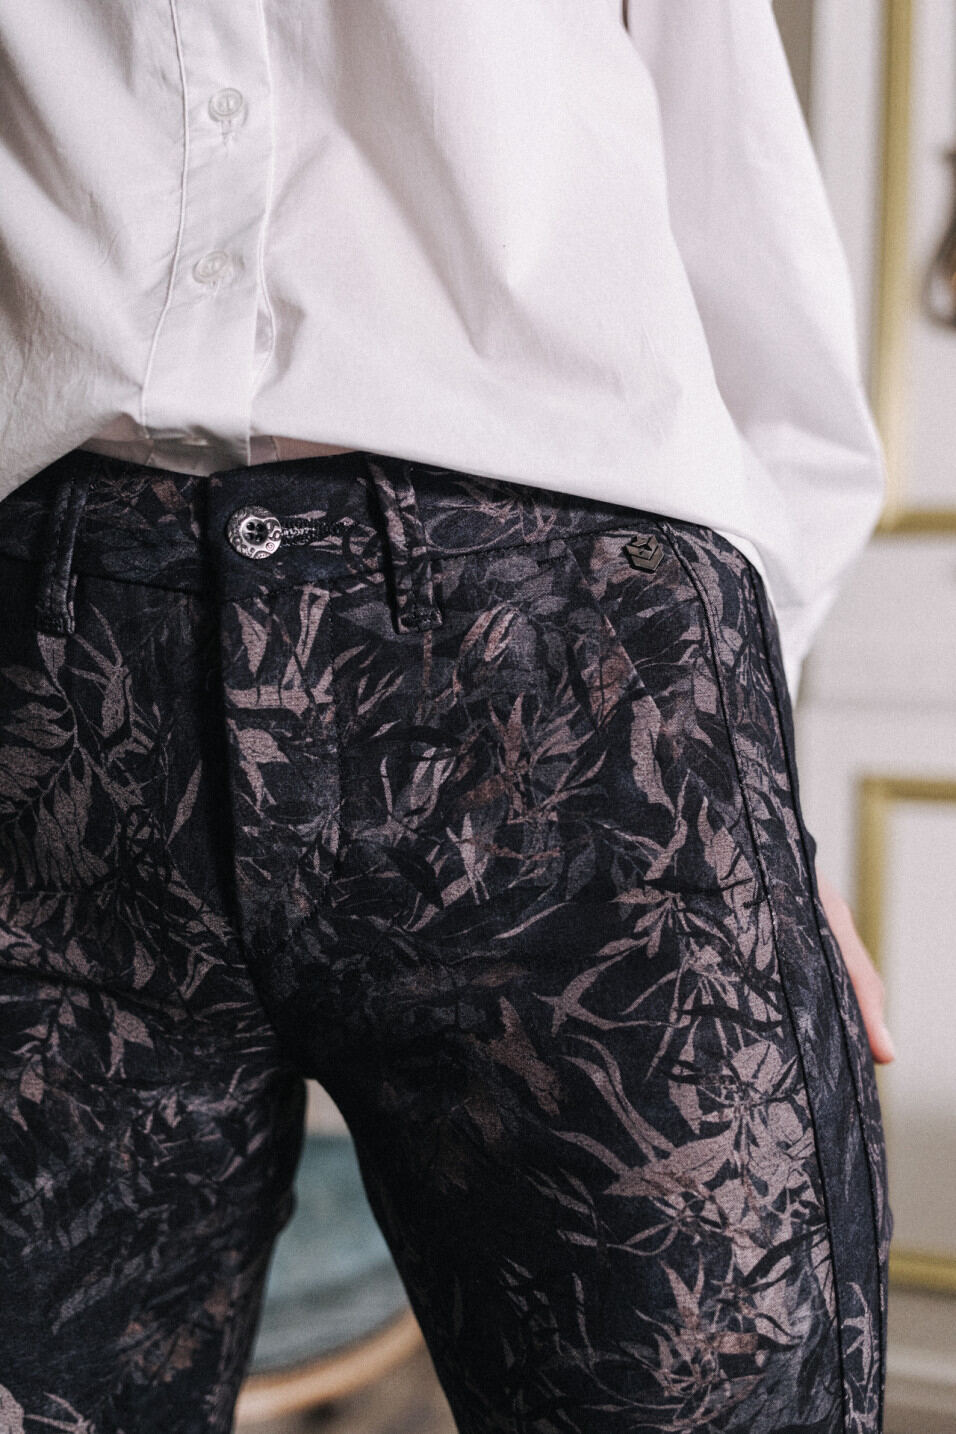 comment porter imprime floral pantalon